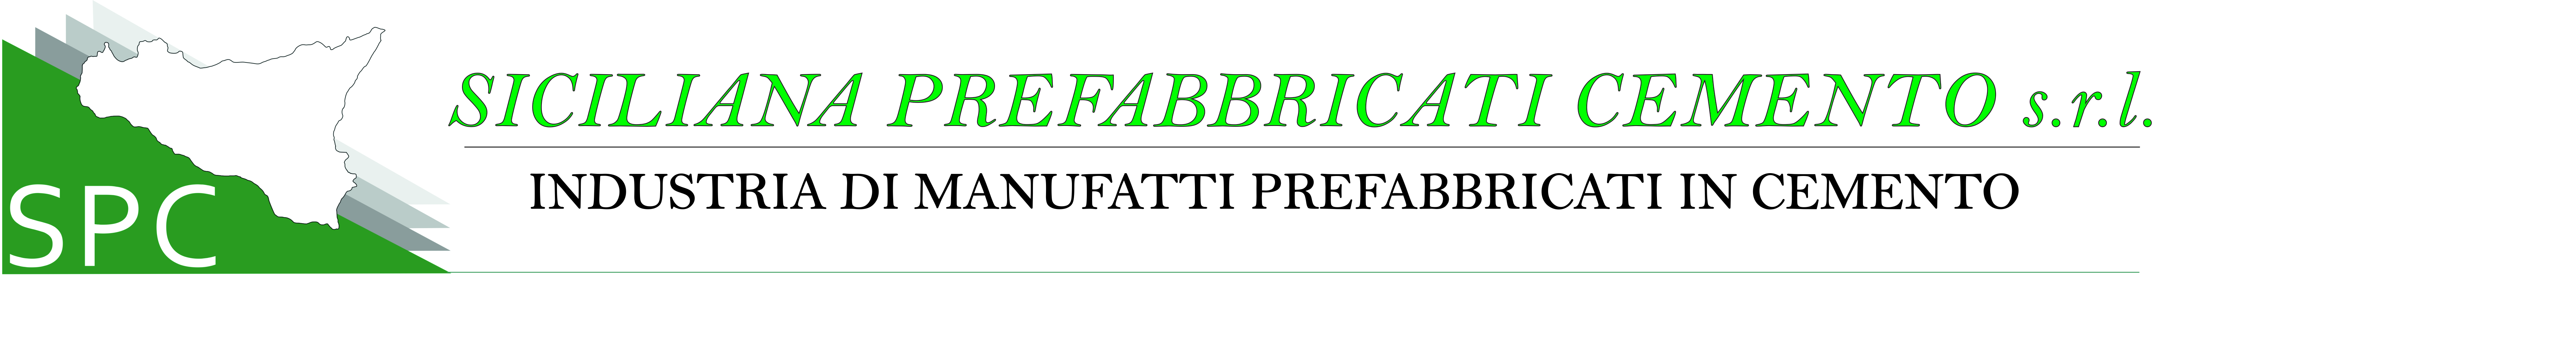 Catalogo - Siciliana Prefabbricati Cemento S.r.l.